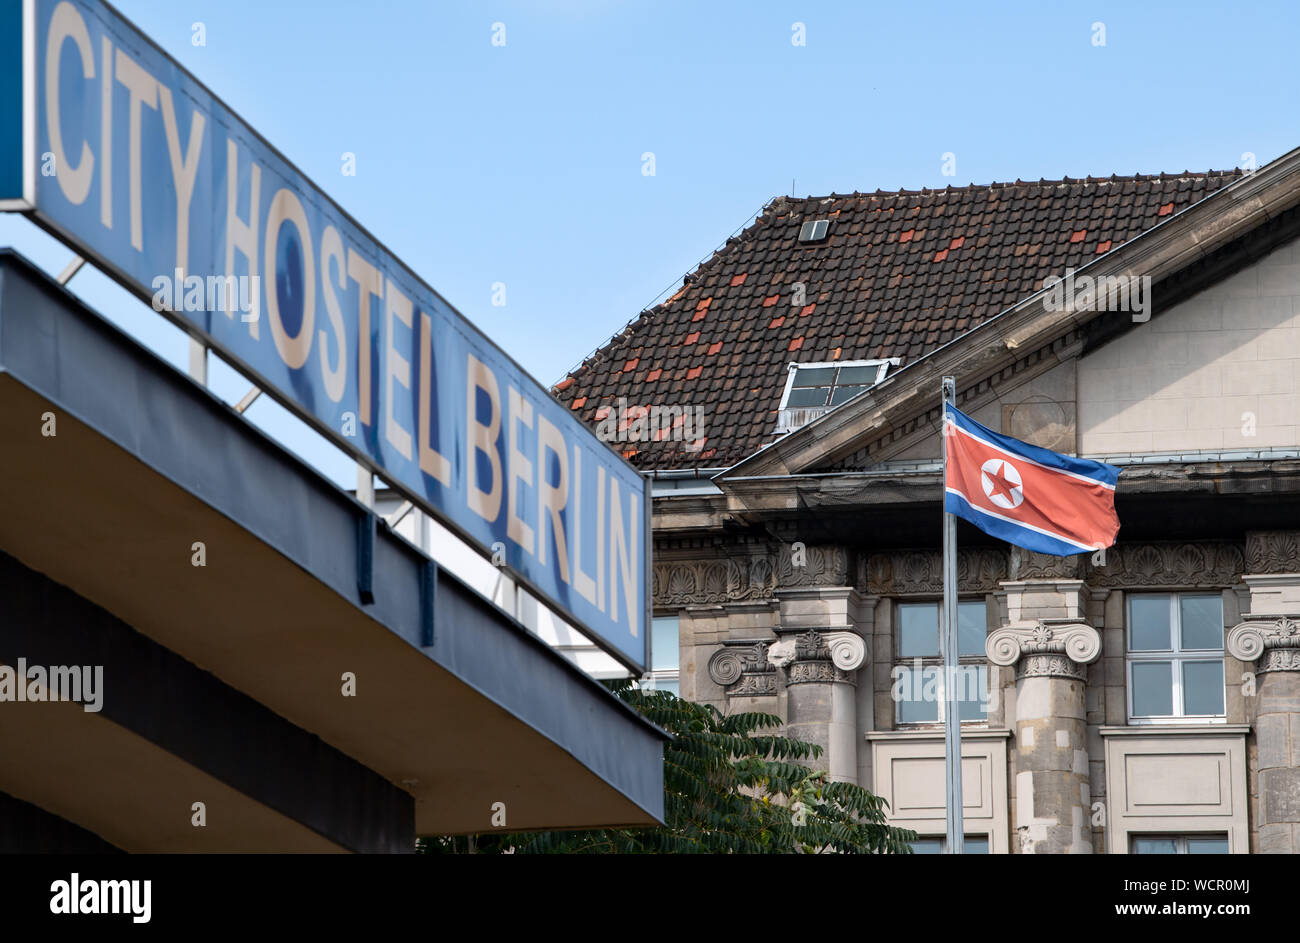 26 août 2019, Berlin : Le City Hostel Berlin à Mitte est situé sur le terrain de l'Ambassade de Corée du Nord, qui est aussi le propriétaire de l'immeuble. Depuis 2016, une résolution de l'ONU a été en vigueur qui interdit la location de biens immobiliers à partir de la Corée du Nord afin d'empêcher la Corée du Nord de générer des devises étrangères que la République populaire pourraient utiliser pour financer son programme nucléaire. Au début de 2018, l'ambassade a donné avis à l'hôtelier et a engagé une action d'expulsion. Cependant, une action d'expulsion ne peut être servie si le demandeur a payé les frais de justice subvention. Et Banque D'Images